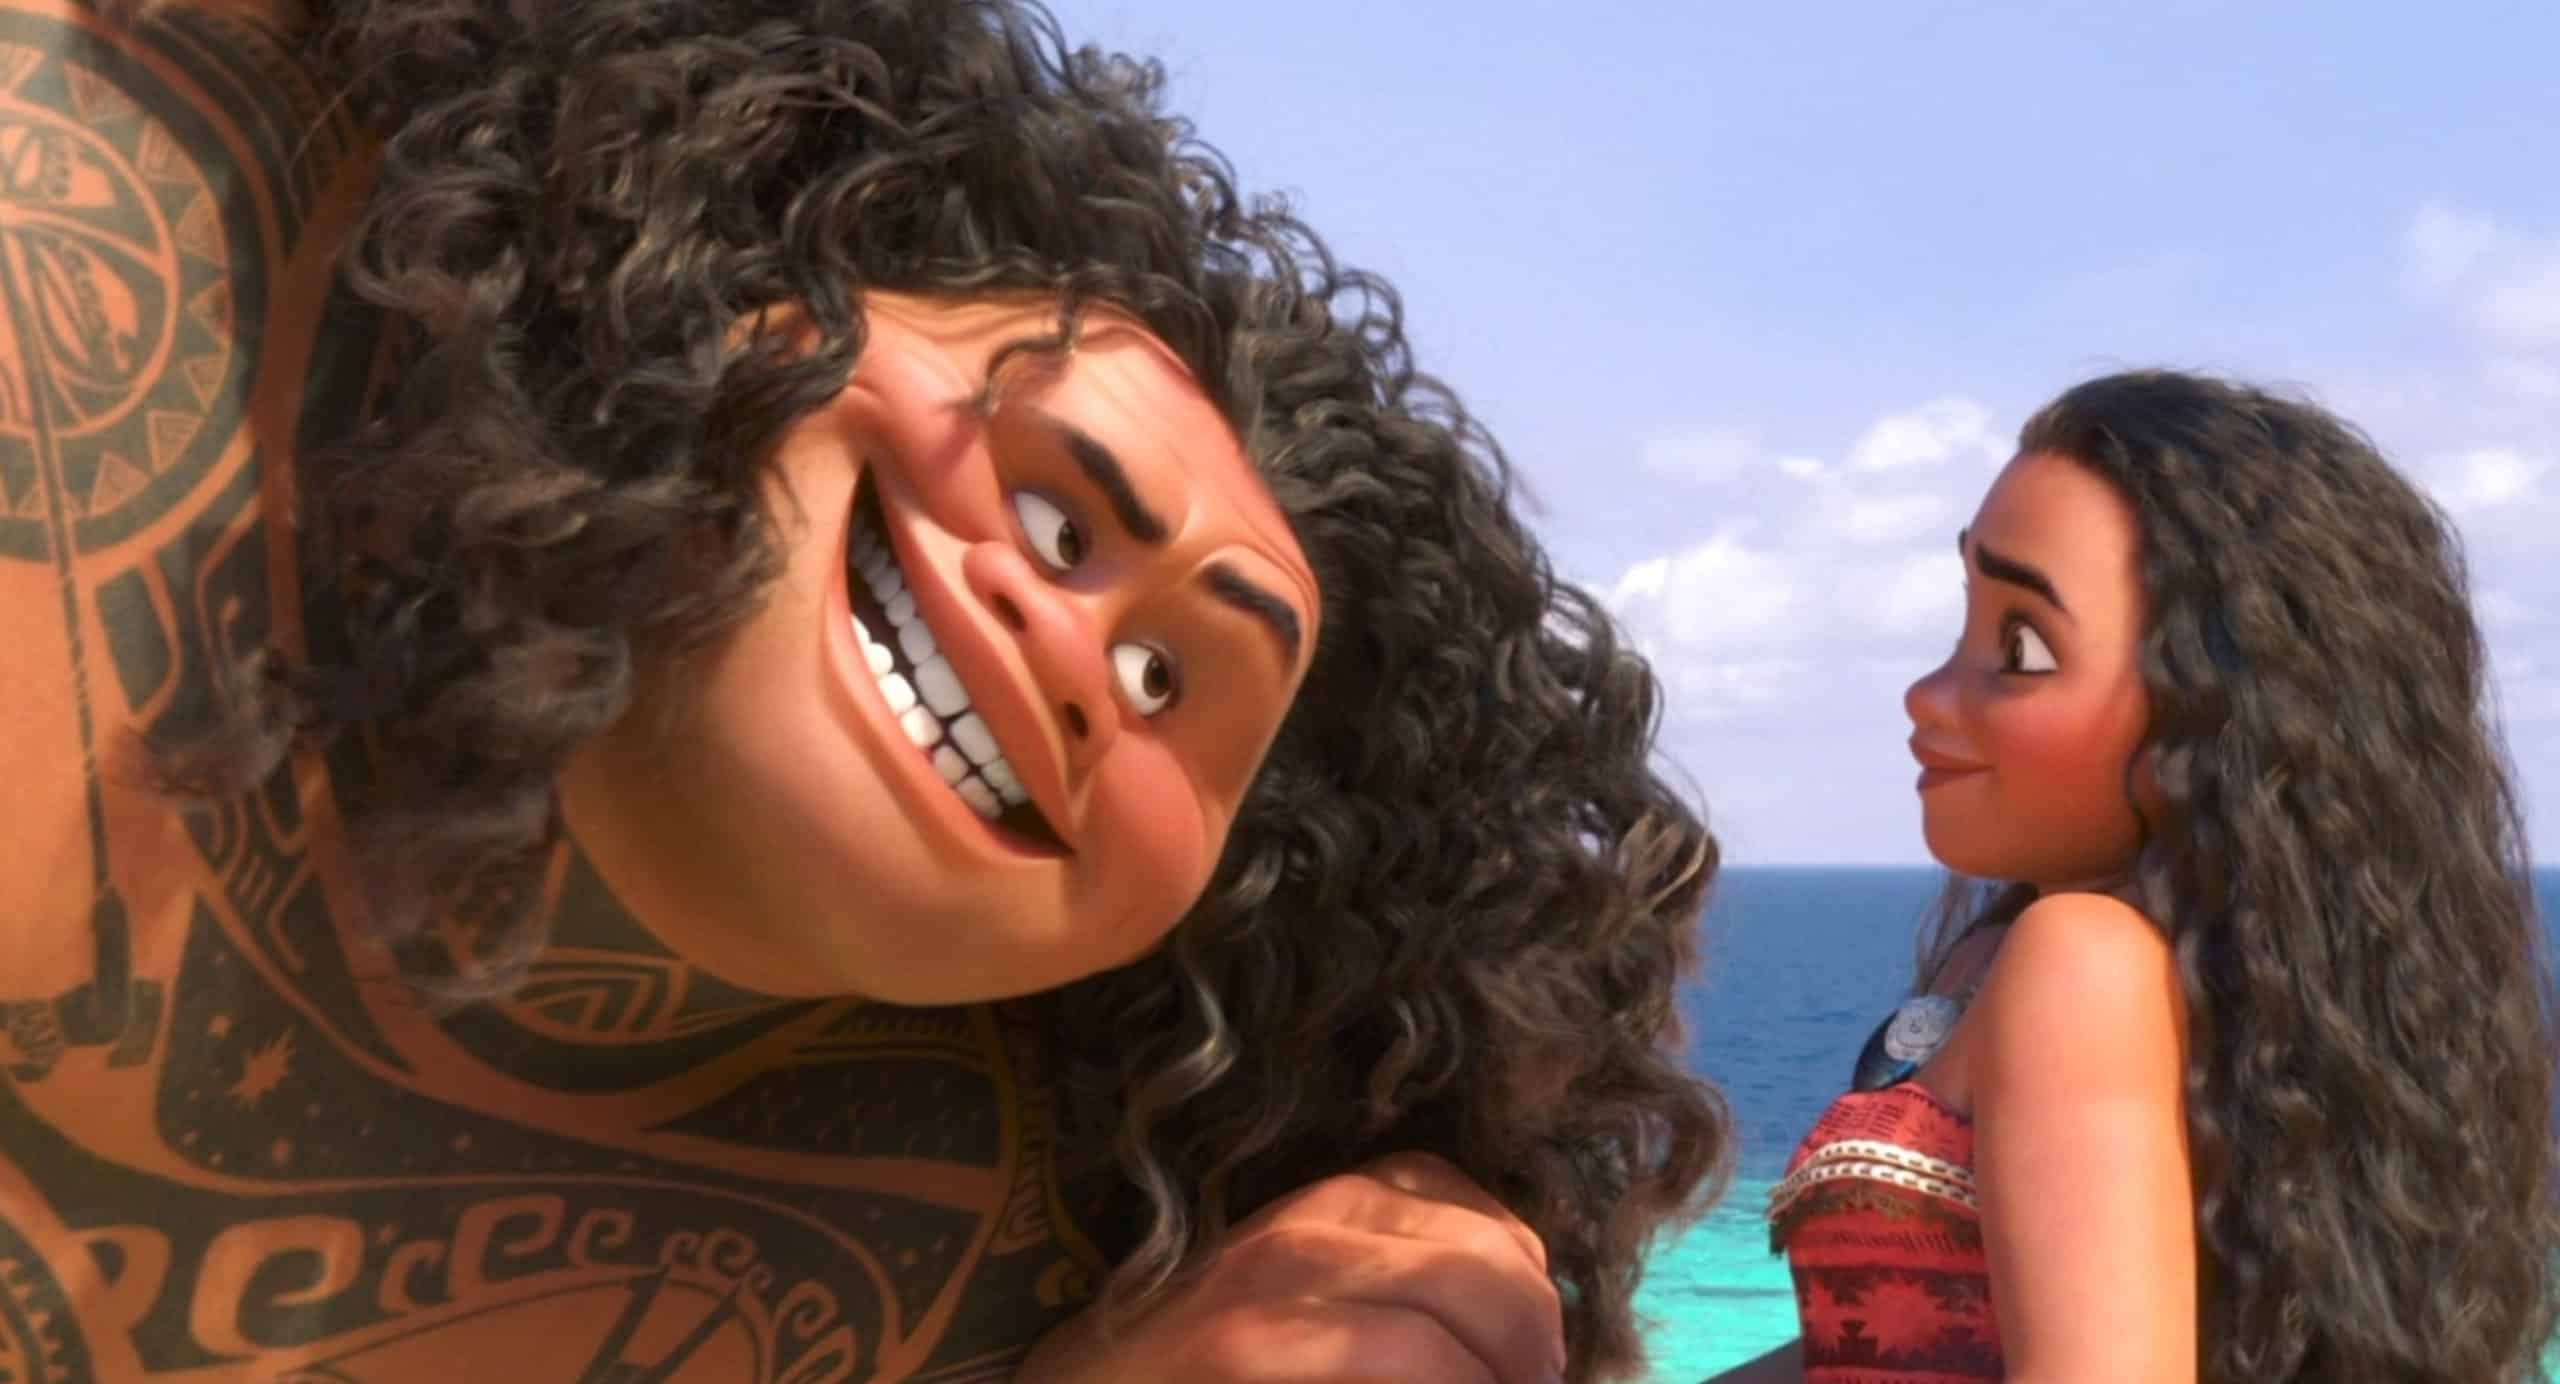 Моана трейлер на русском. Моана 2016 Мауи. Дисней Моана и Мауи. Моана 2 Мауи. Персонажи Моаны Мауи.